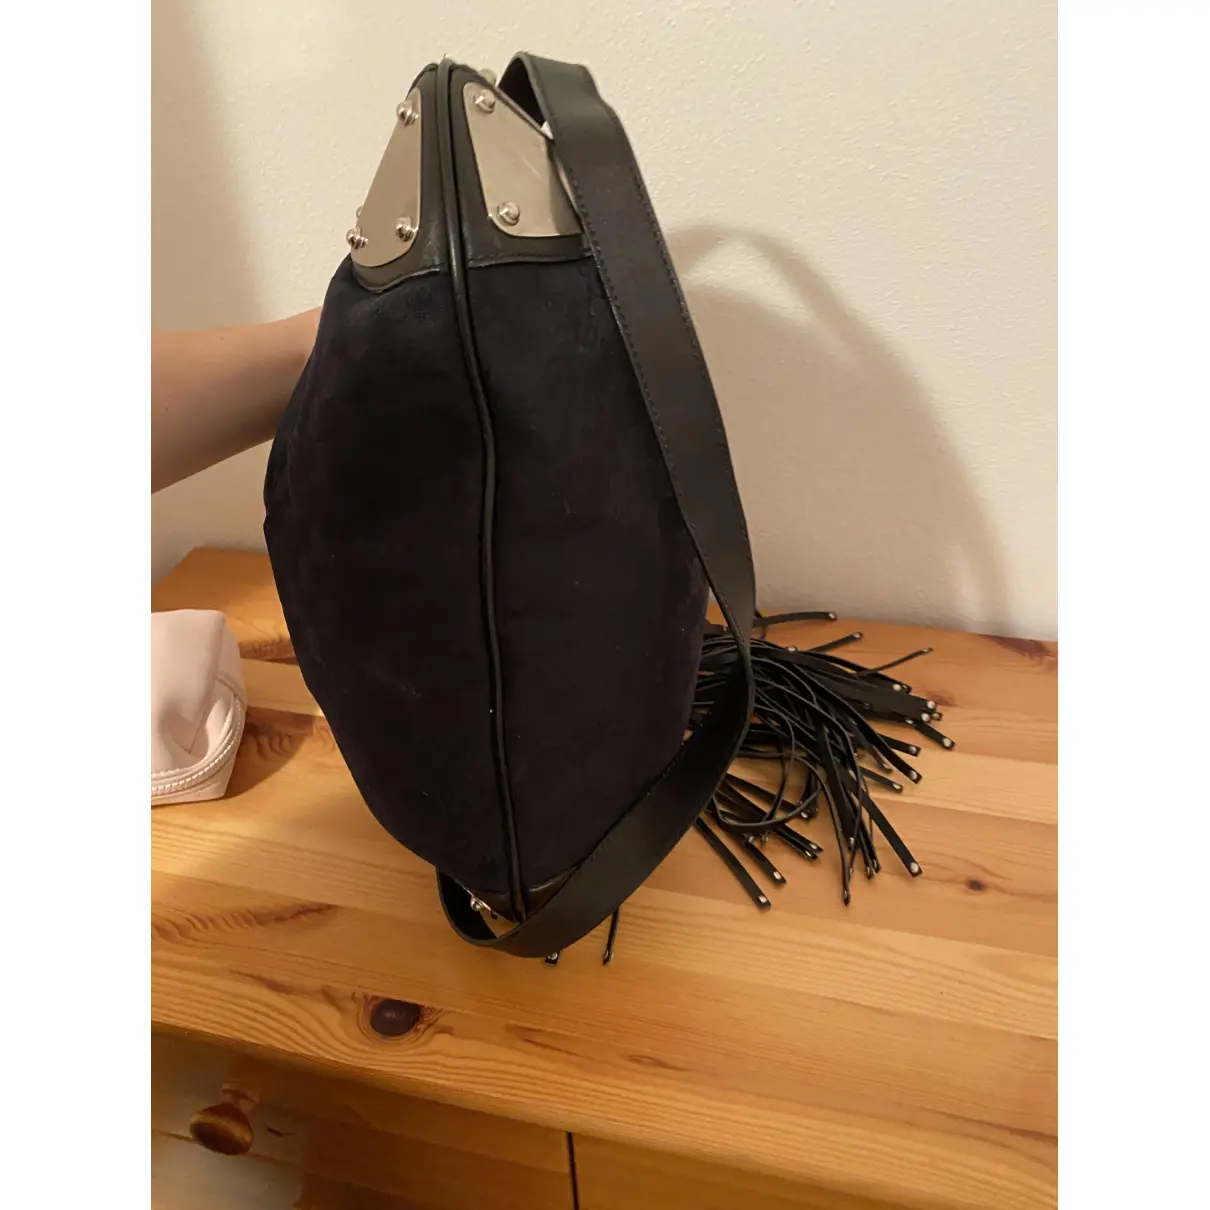 Buy Gucci Indy cloth handbag online - Vintage